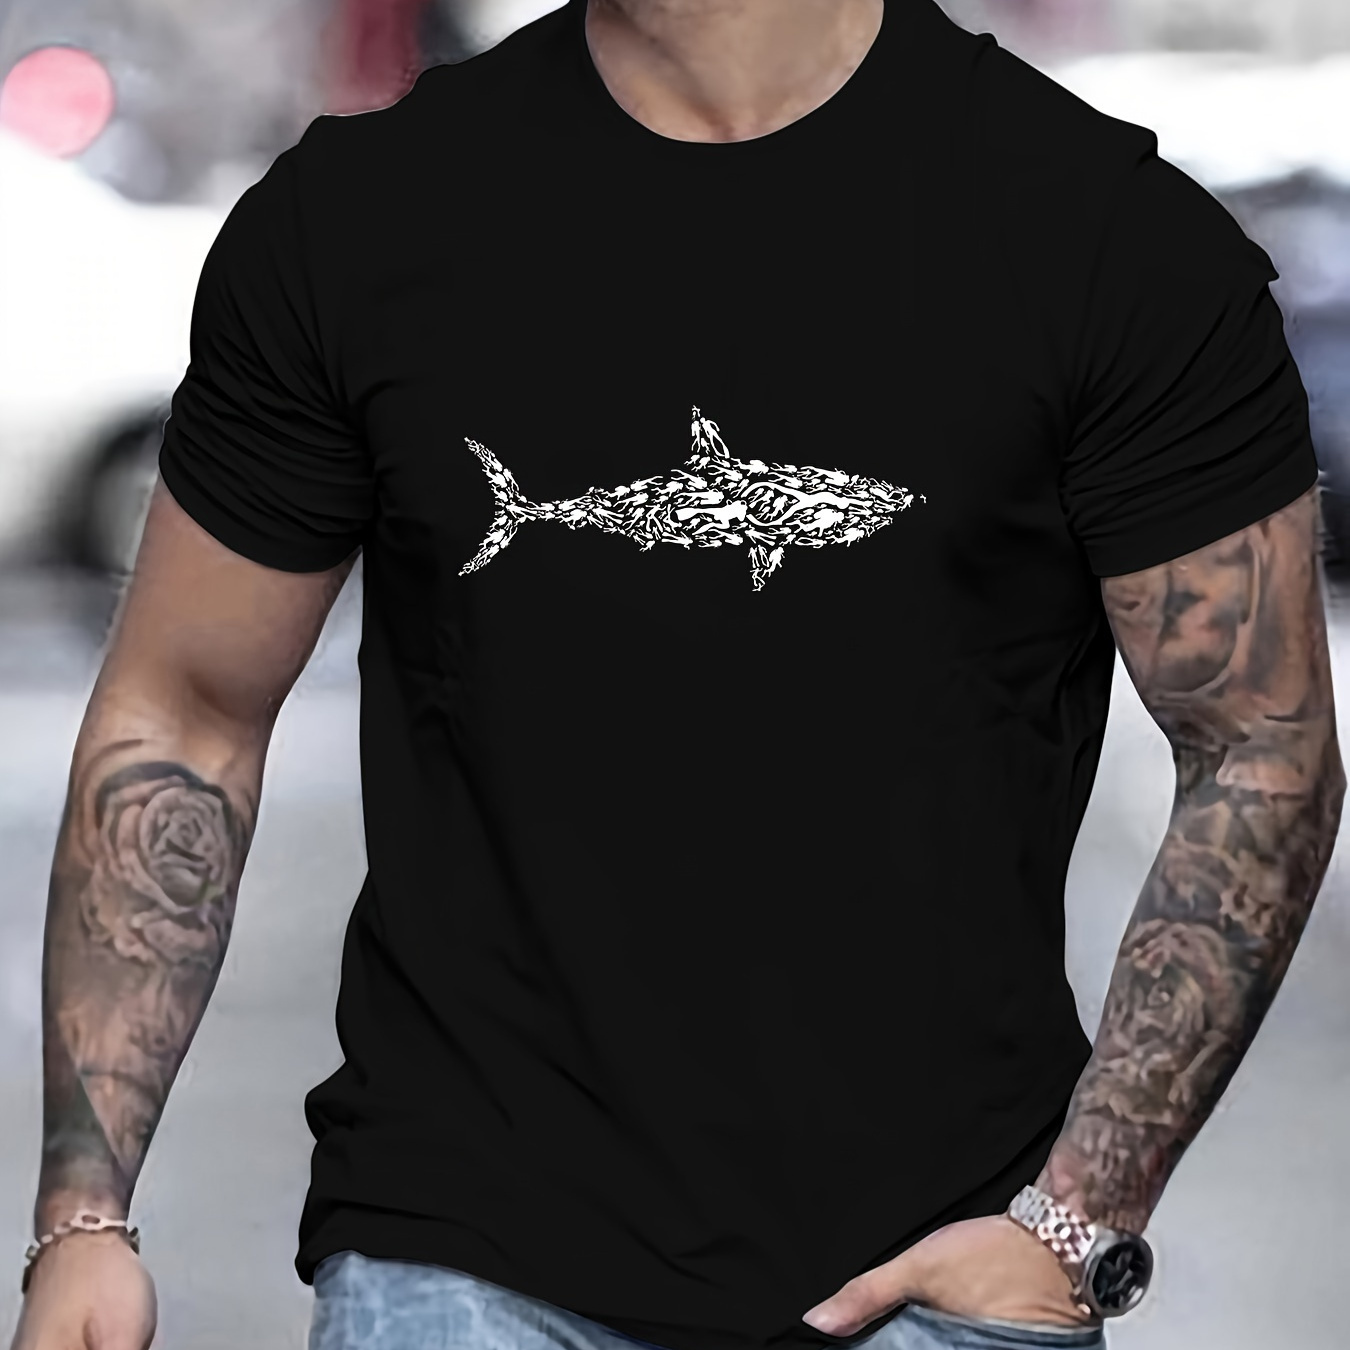 

Men's Shark Print Short Sleeve T-shirts, Comfy Casual Elastic Crew Neck Tops For Men's Outdoor Activities